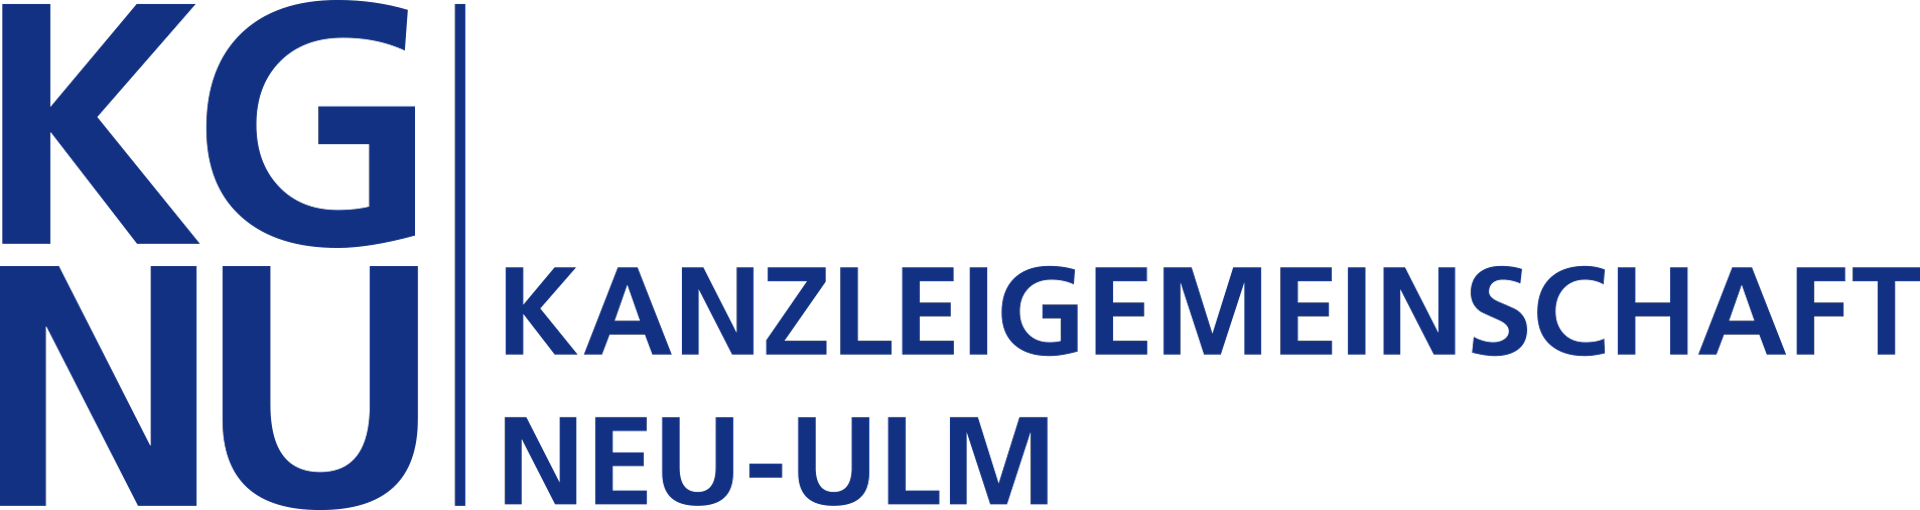 Logo - Kanzleigemeinschaft Neu-Ulm